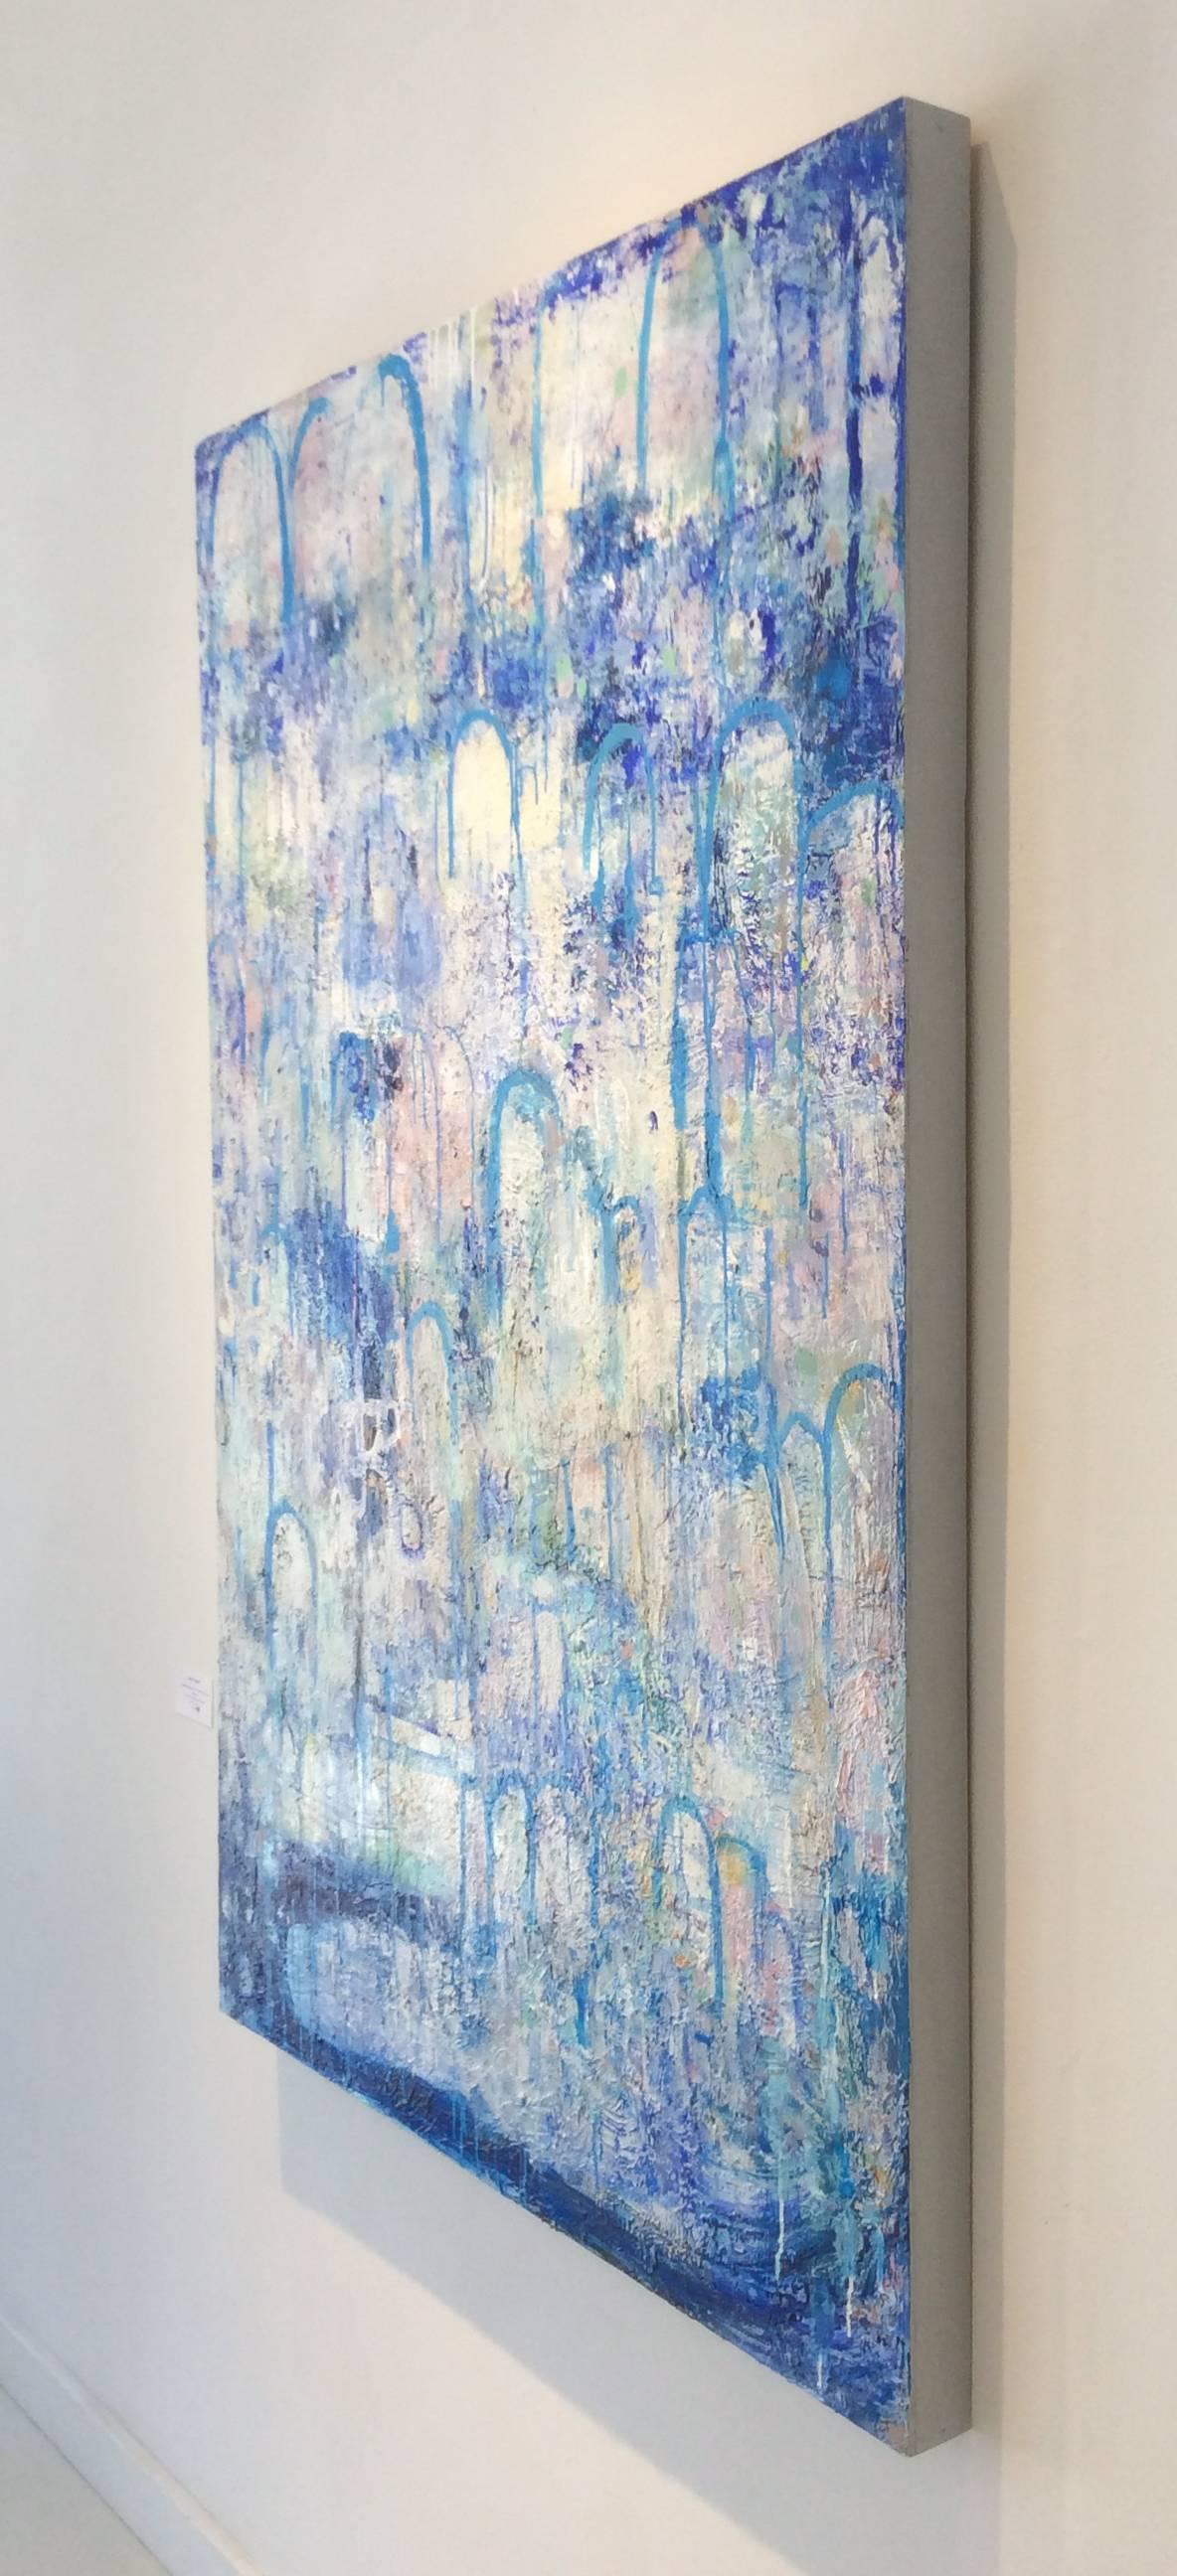 Hydrologie (zeitgenössisches vertikales abstraktes Expressionistisches Gemälde, Blau & Weiß) (Zeitgenössisch), Painting, von Ragellah Rourke